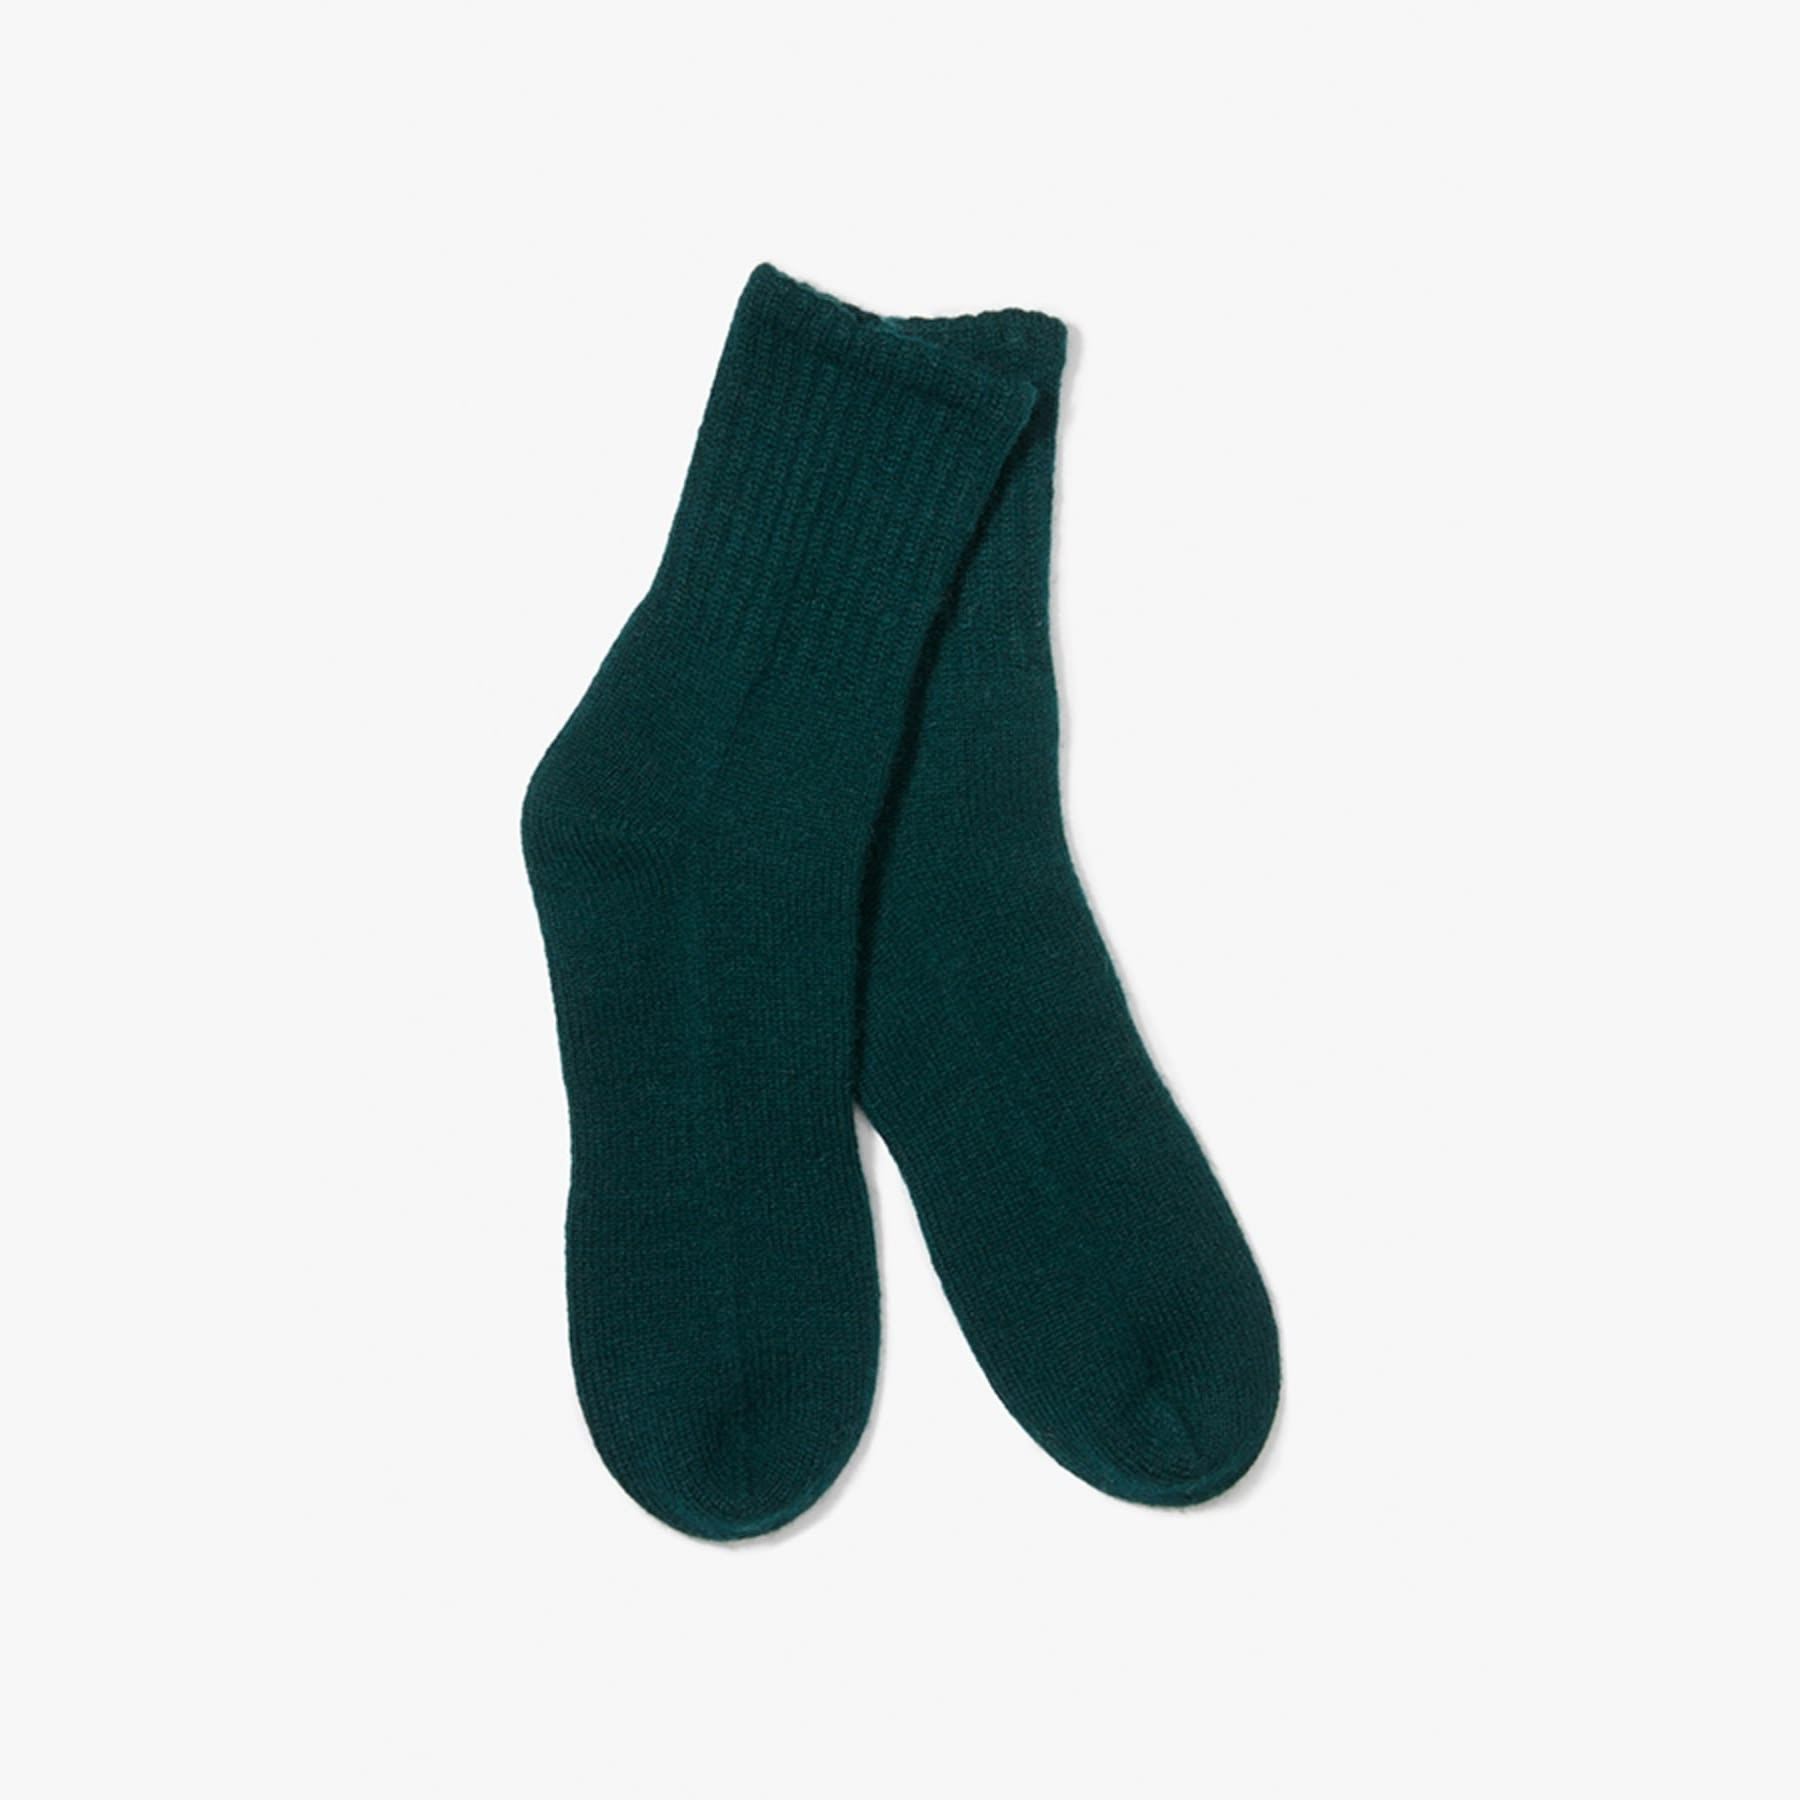 Cashmere socks hunter green packshot. 